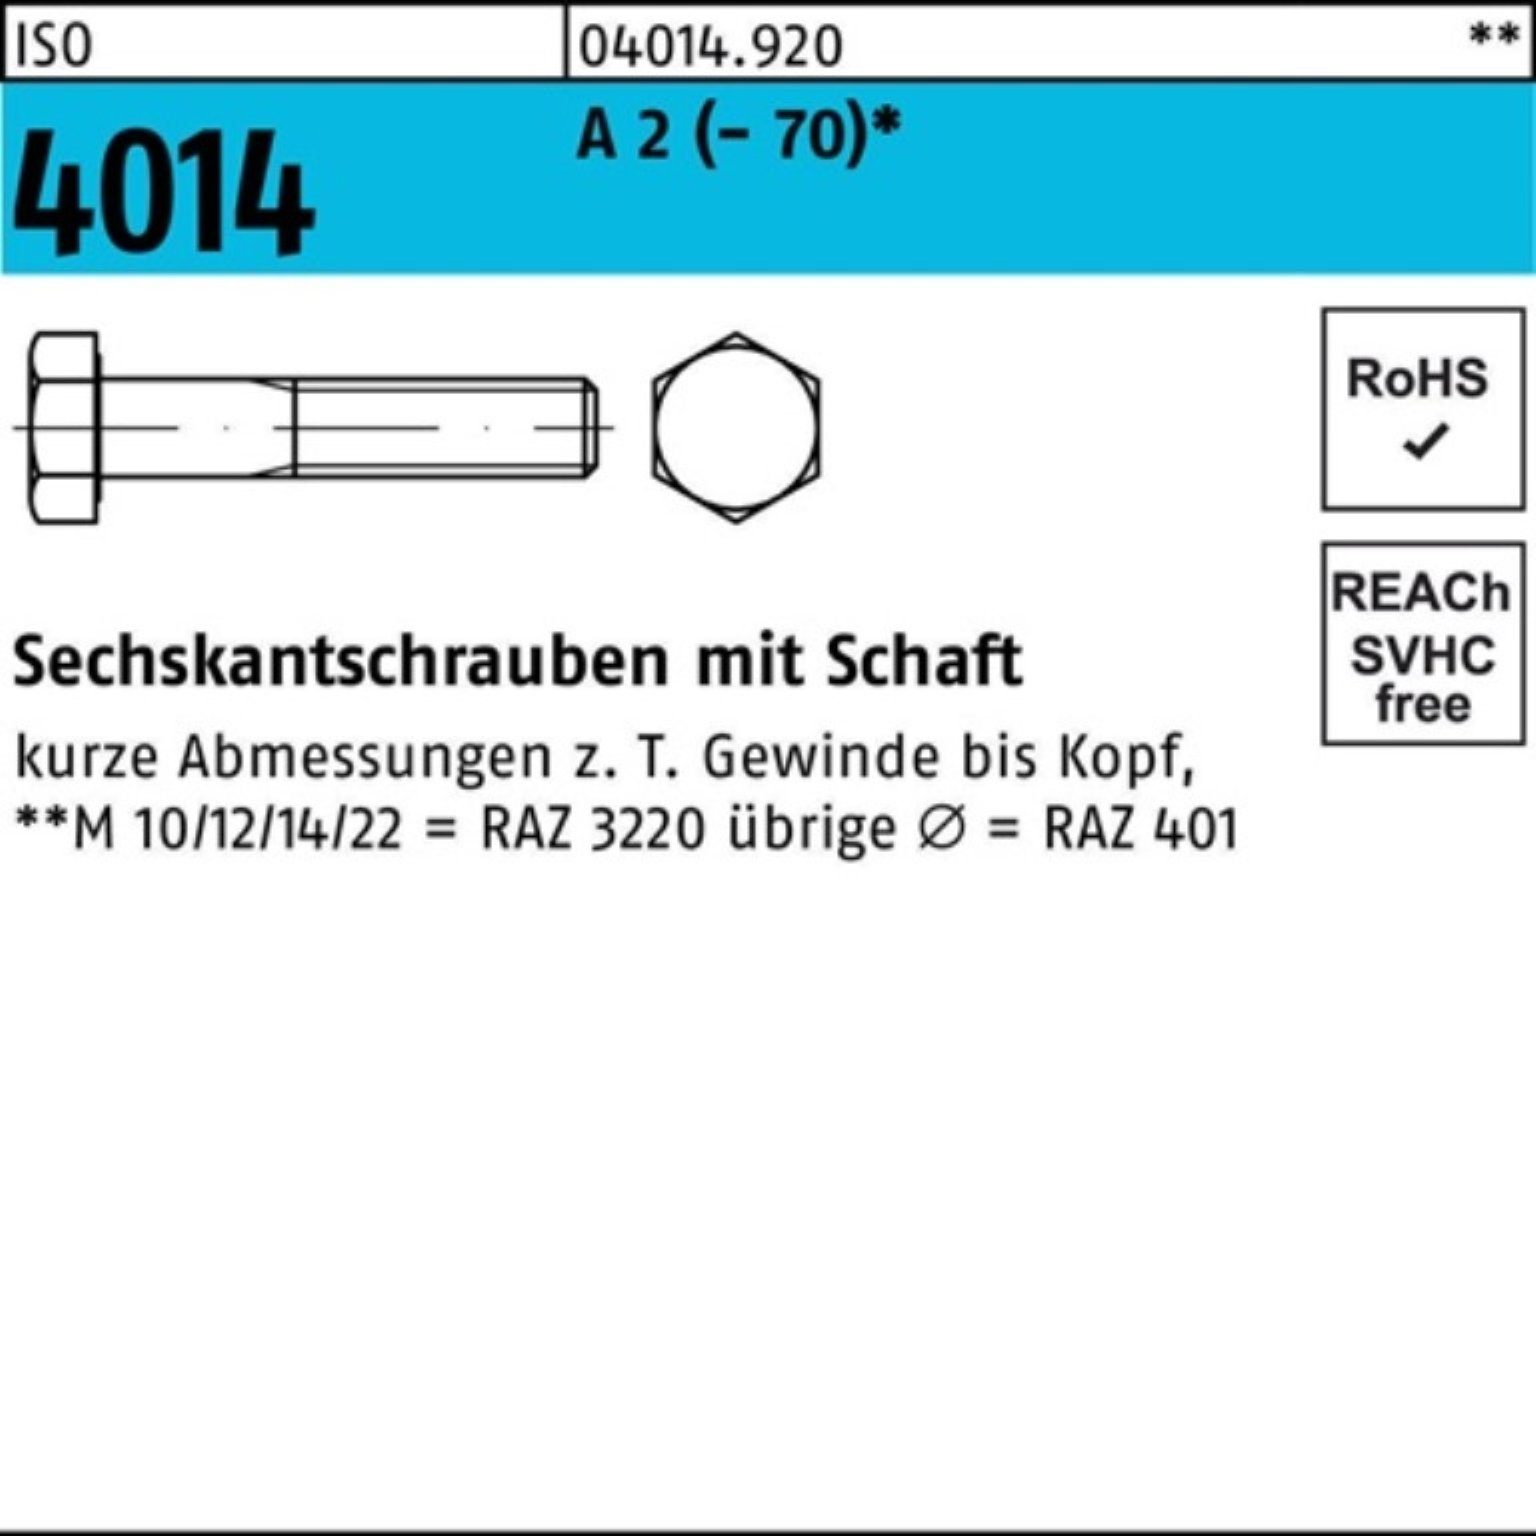 80 Sechskantschraube Bufab 10 Pack M22x 100er Schaft Sechskantschraube 2 A St 4014 (70) ISO